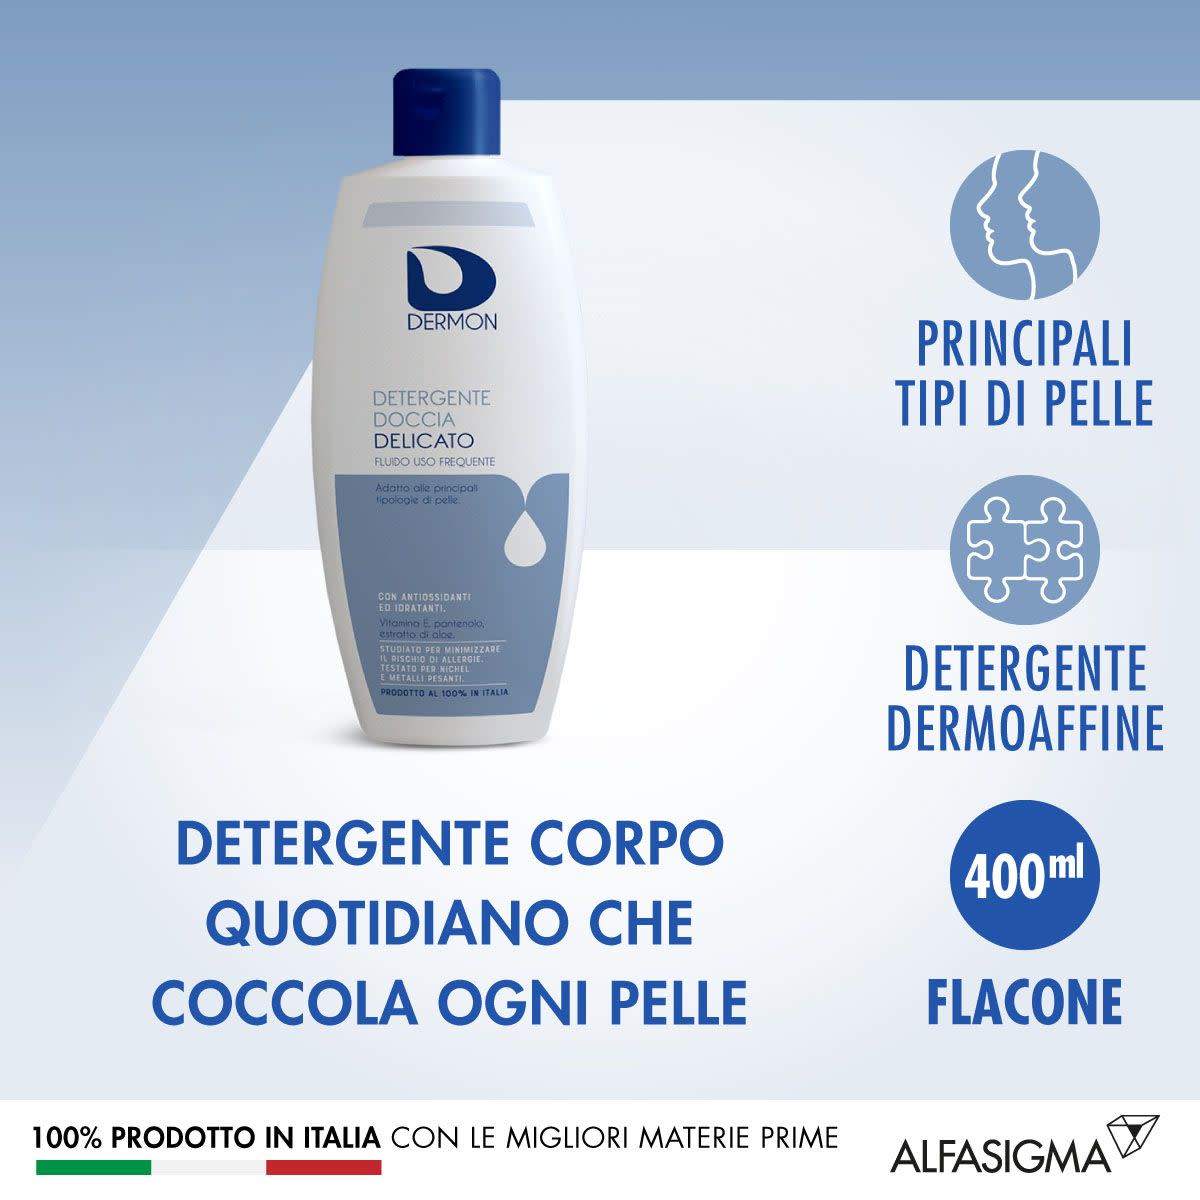 981389291 - Dermon Detergente Doccia delicato 400ml - 4708751_3.jpg